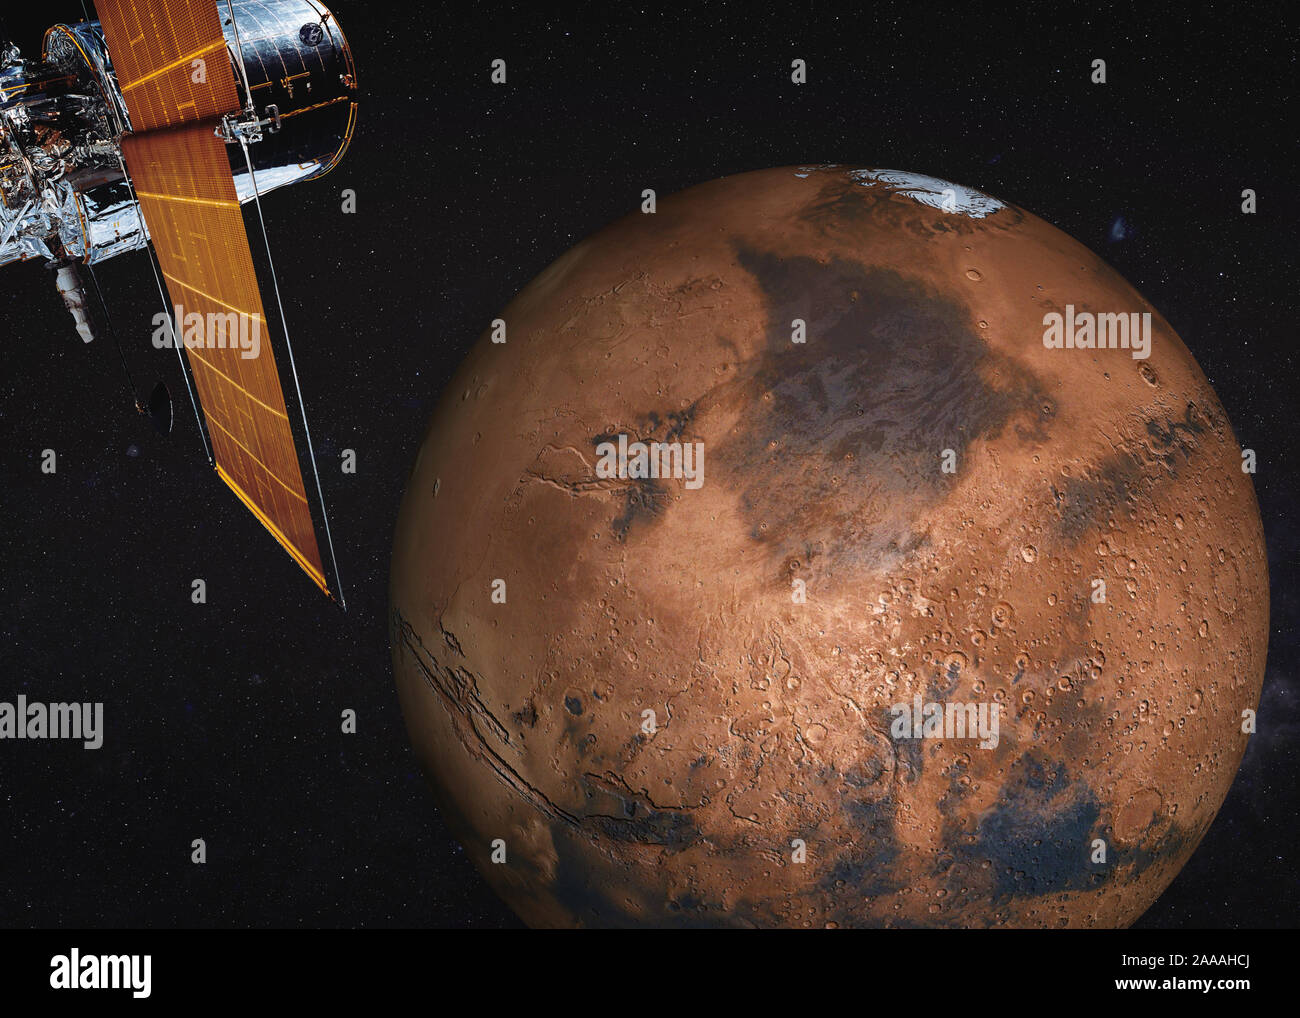 Télescope Satellite près de Mars planète du système solaire quelque part dans l'espace. La science-fiction. Éléments de l'image ont été fournies par la NASA Banque D'Images